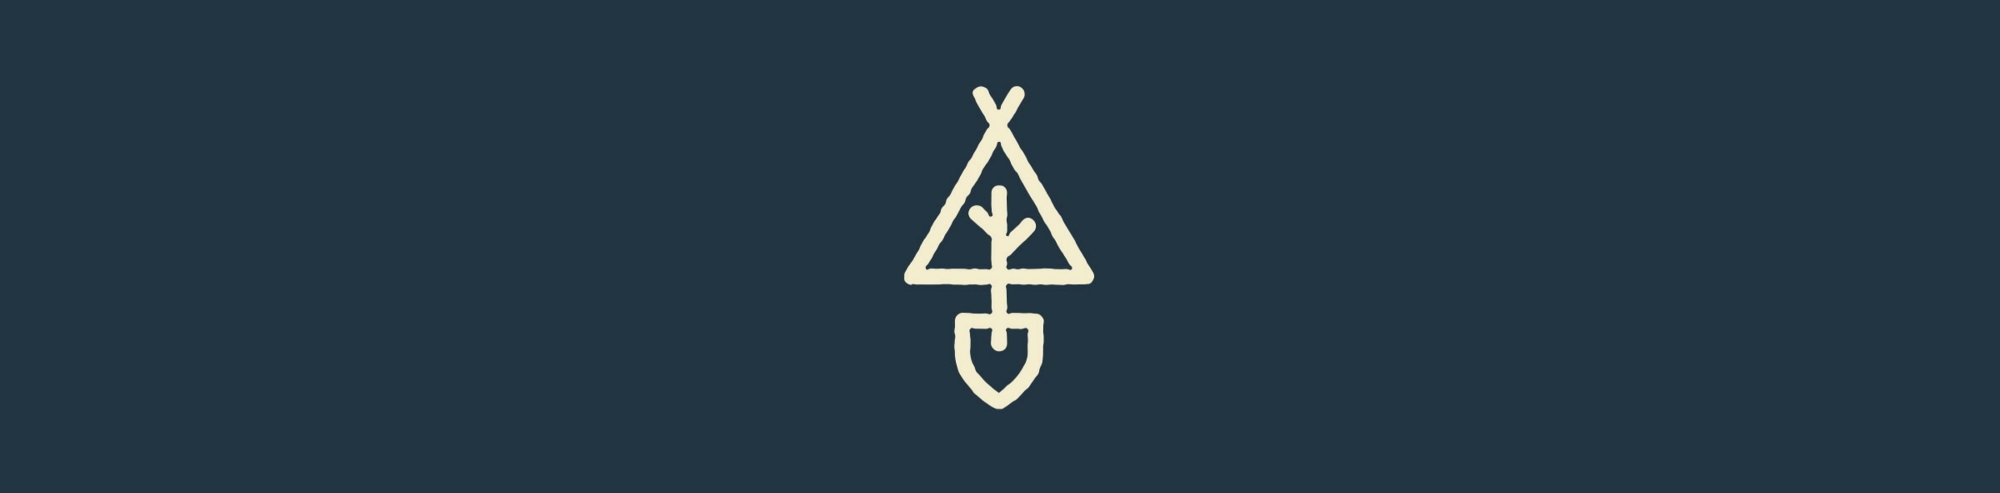 jenns-logo-banner